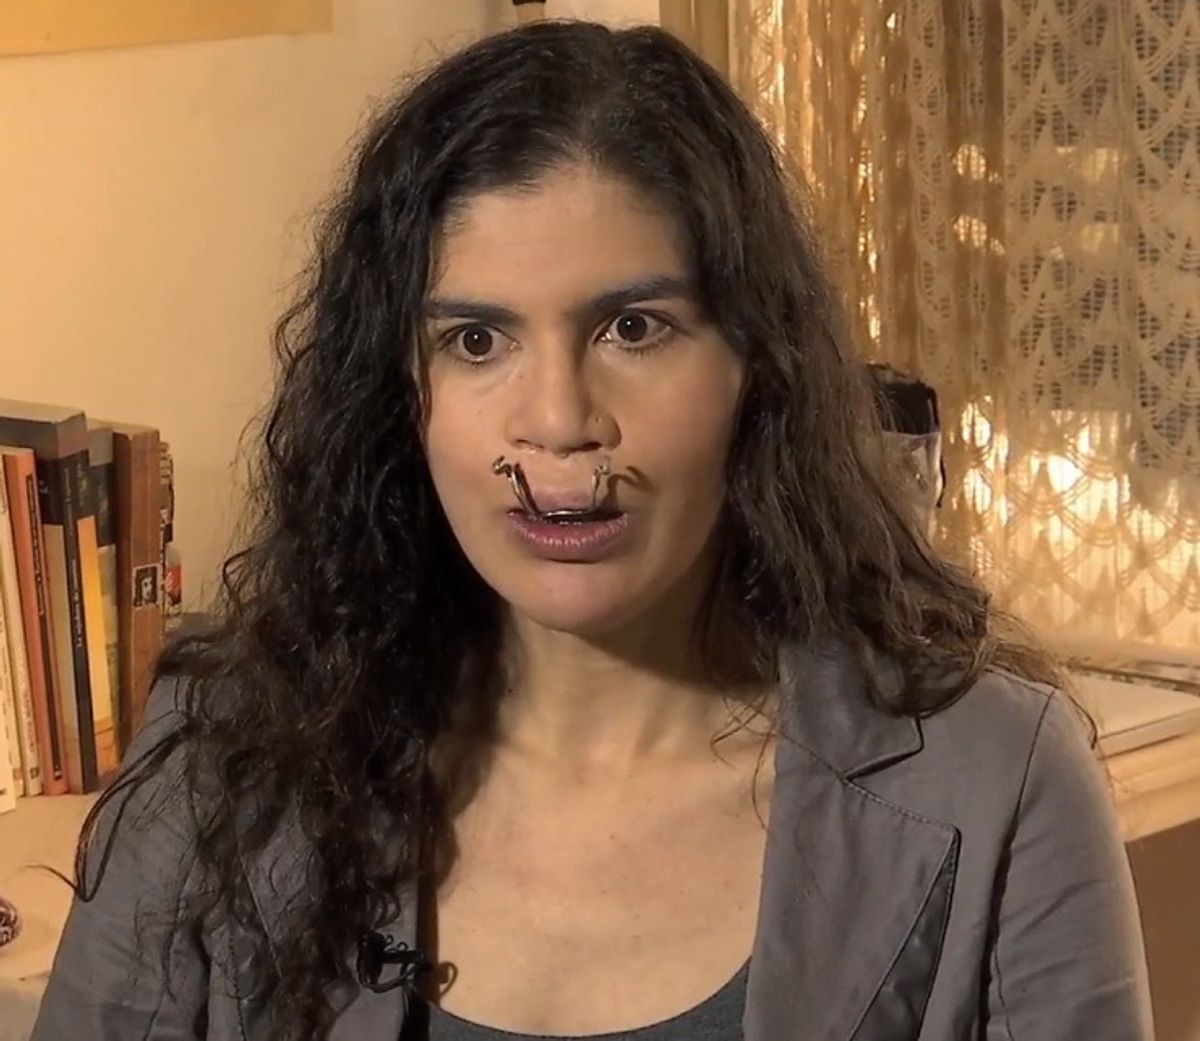 Académica desea acabar con su vida por discriminación por tener labio leporino